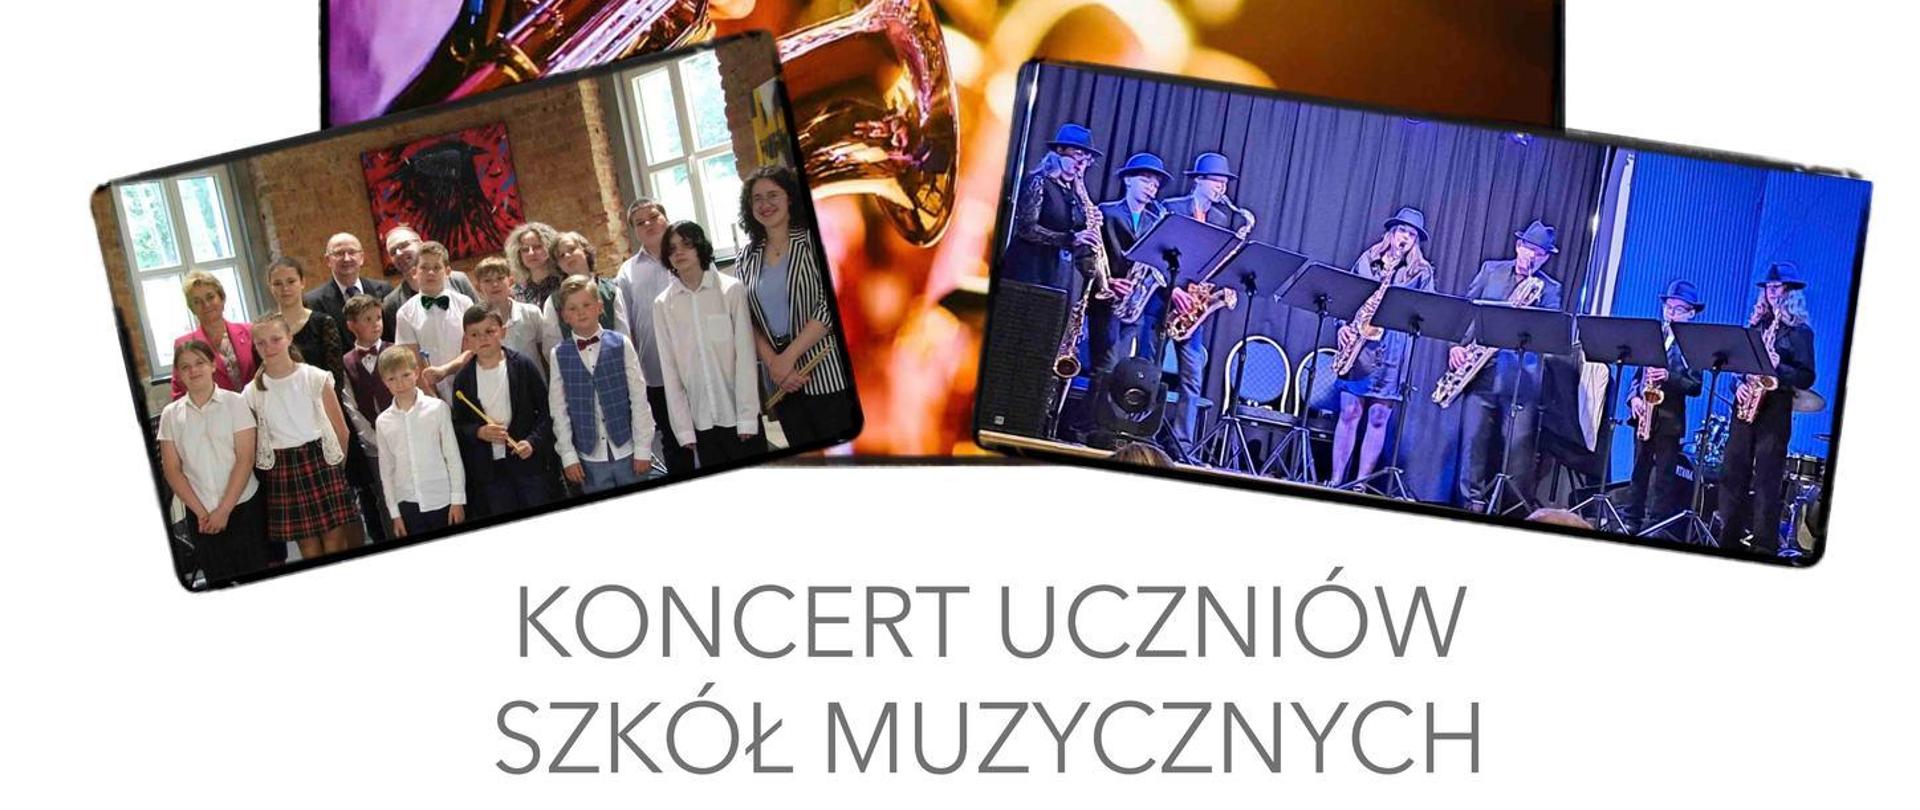 Plakat z informacja o koncercie uczniów szkół muzycznych. W górnej części plakatu trzy fotografie przedstawiające muzyków z instrumentami.